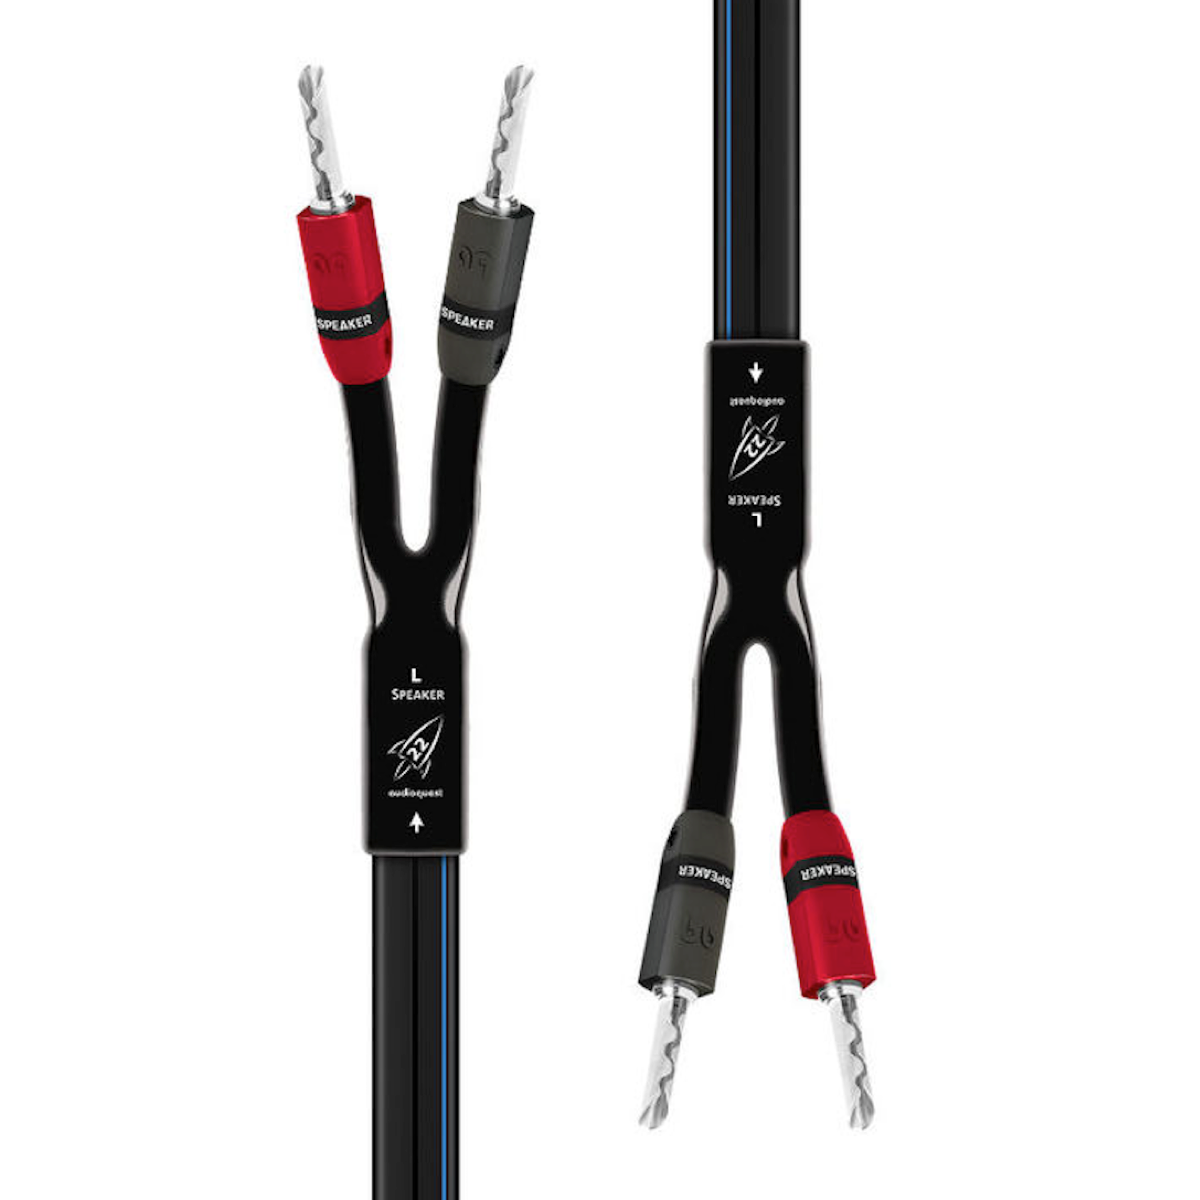 AudioQuest Rocket 22 - Speaker Cable - Pair - AVStore